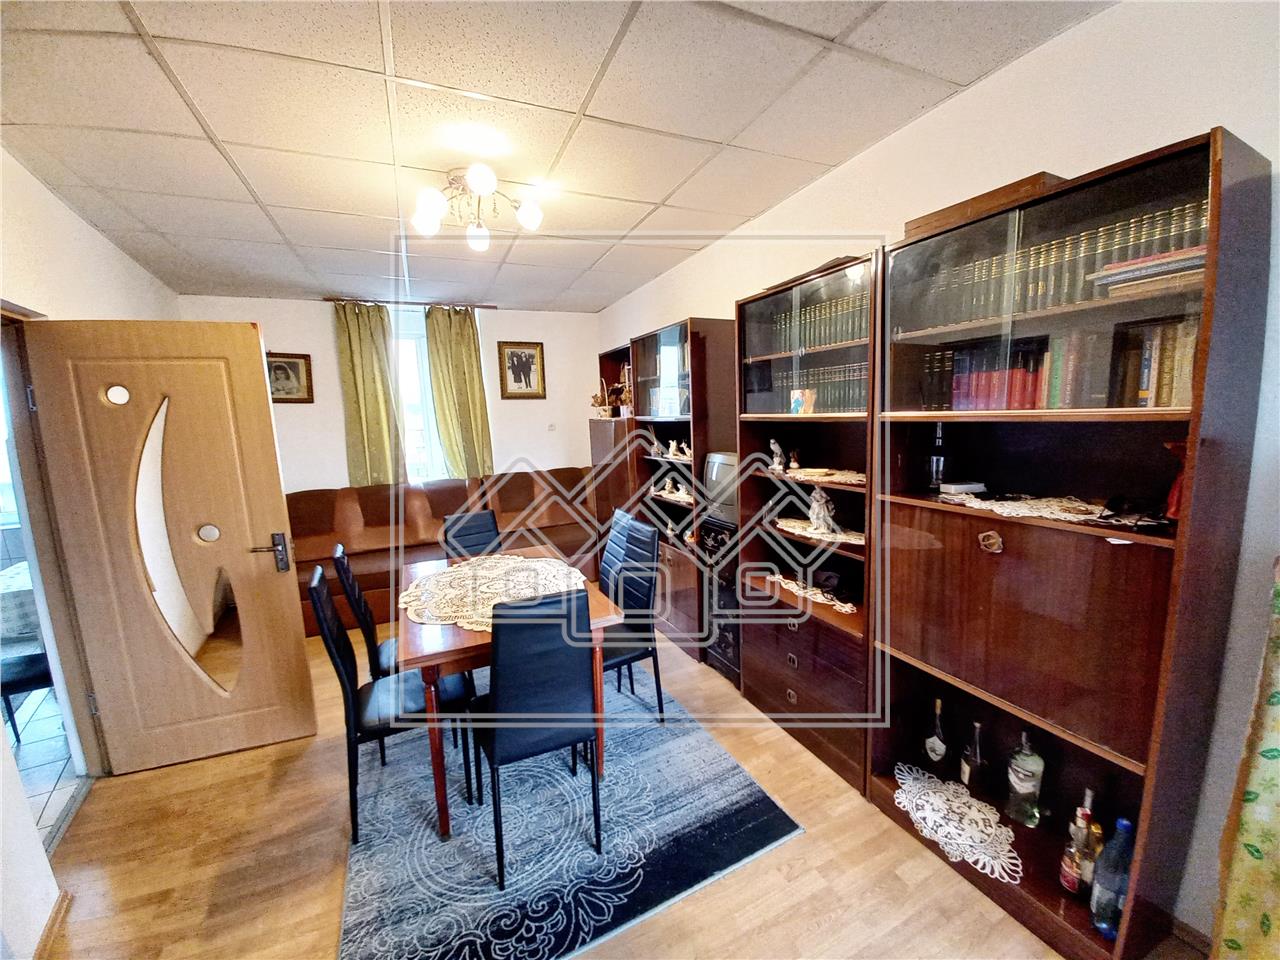 Apartment for sale in Alba Iulia - 4 rooms - detached - 105 sqm